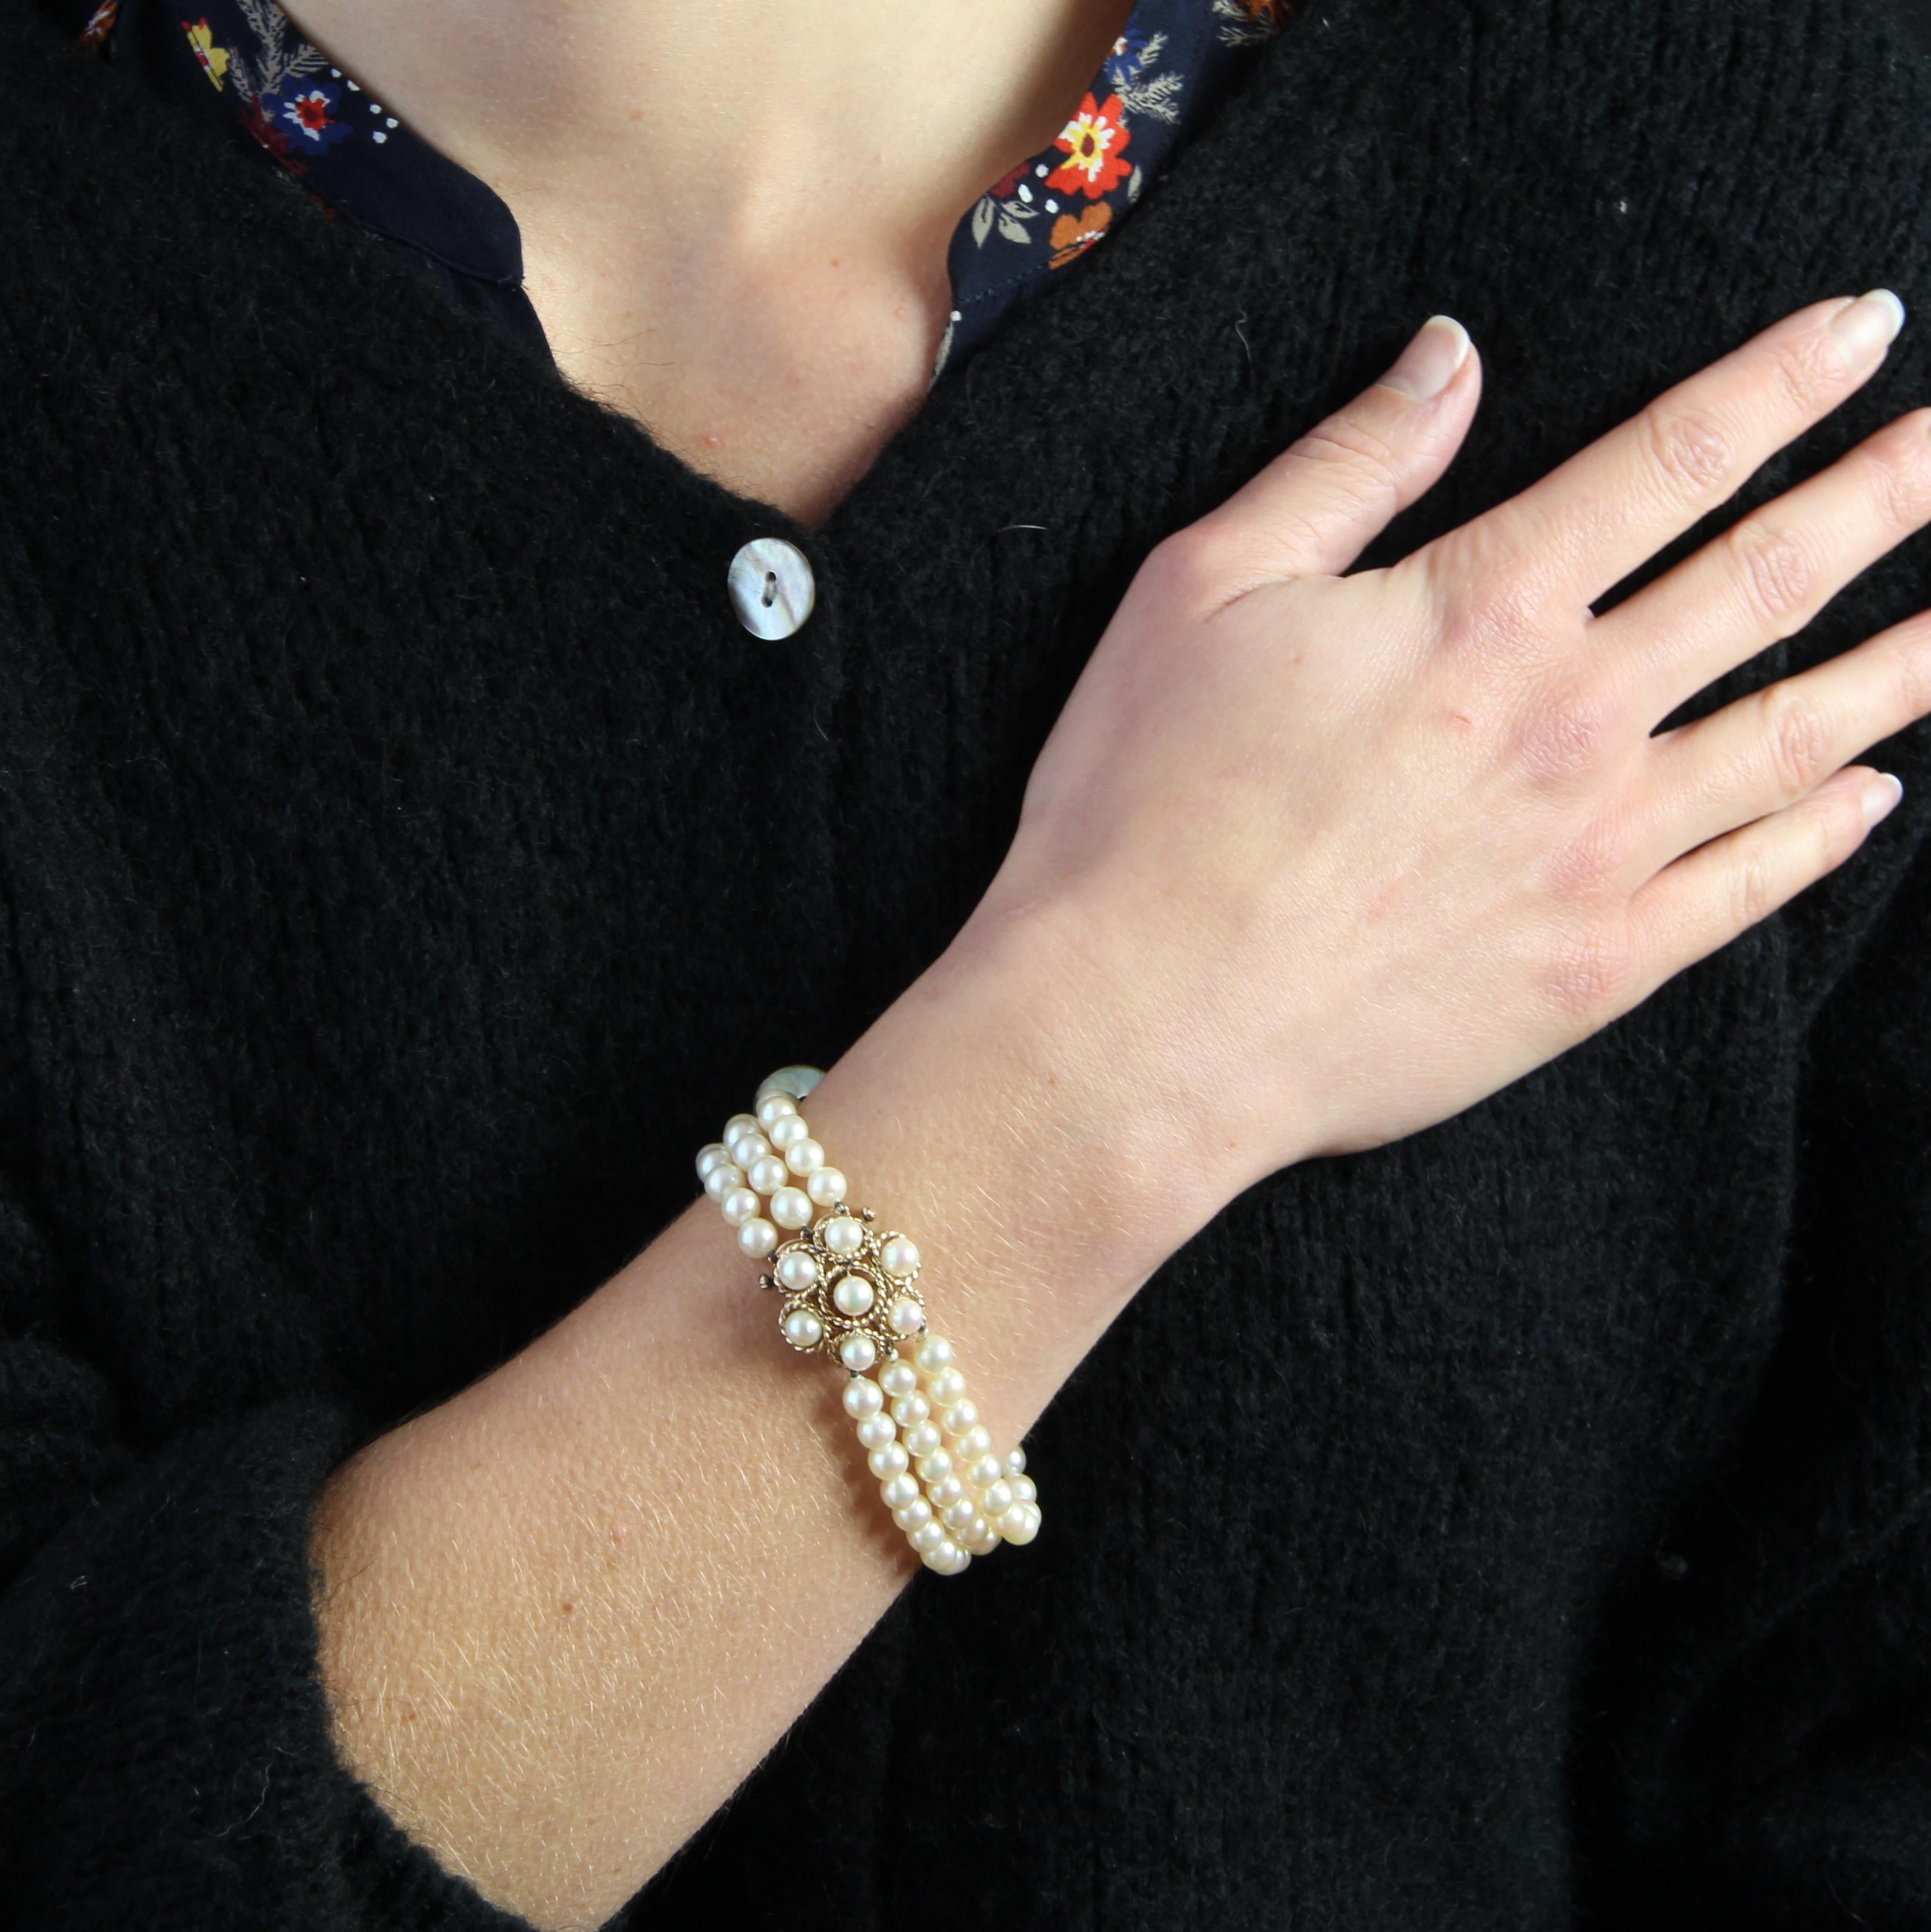 Bracelet composé de 3 rangs de perles de culture blanches orientées, le fermoir est un motif en forme de fleur réalisé en cordon d'or et décoré de 7 perles assorties à celles du bracelet. Le fermoir est à cliquet.
Diamètre des perles : 5.5/6 mm